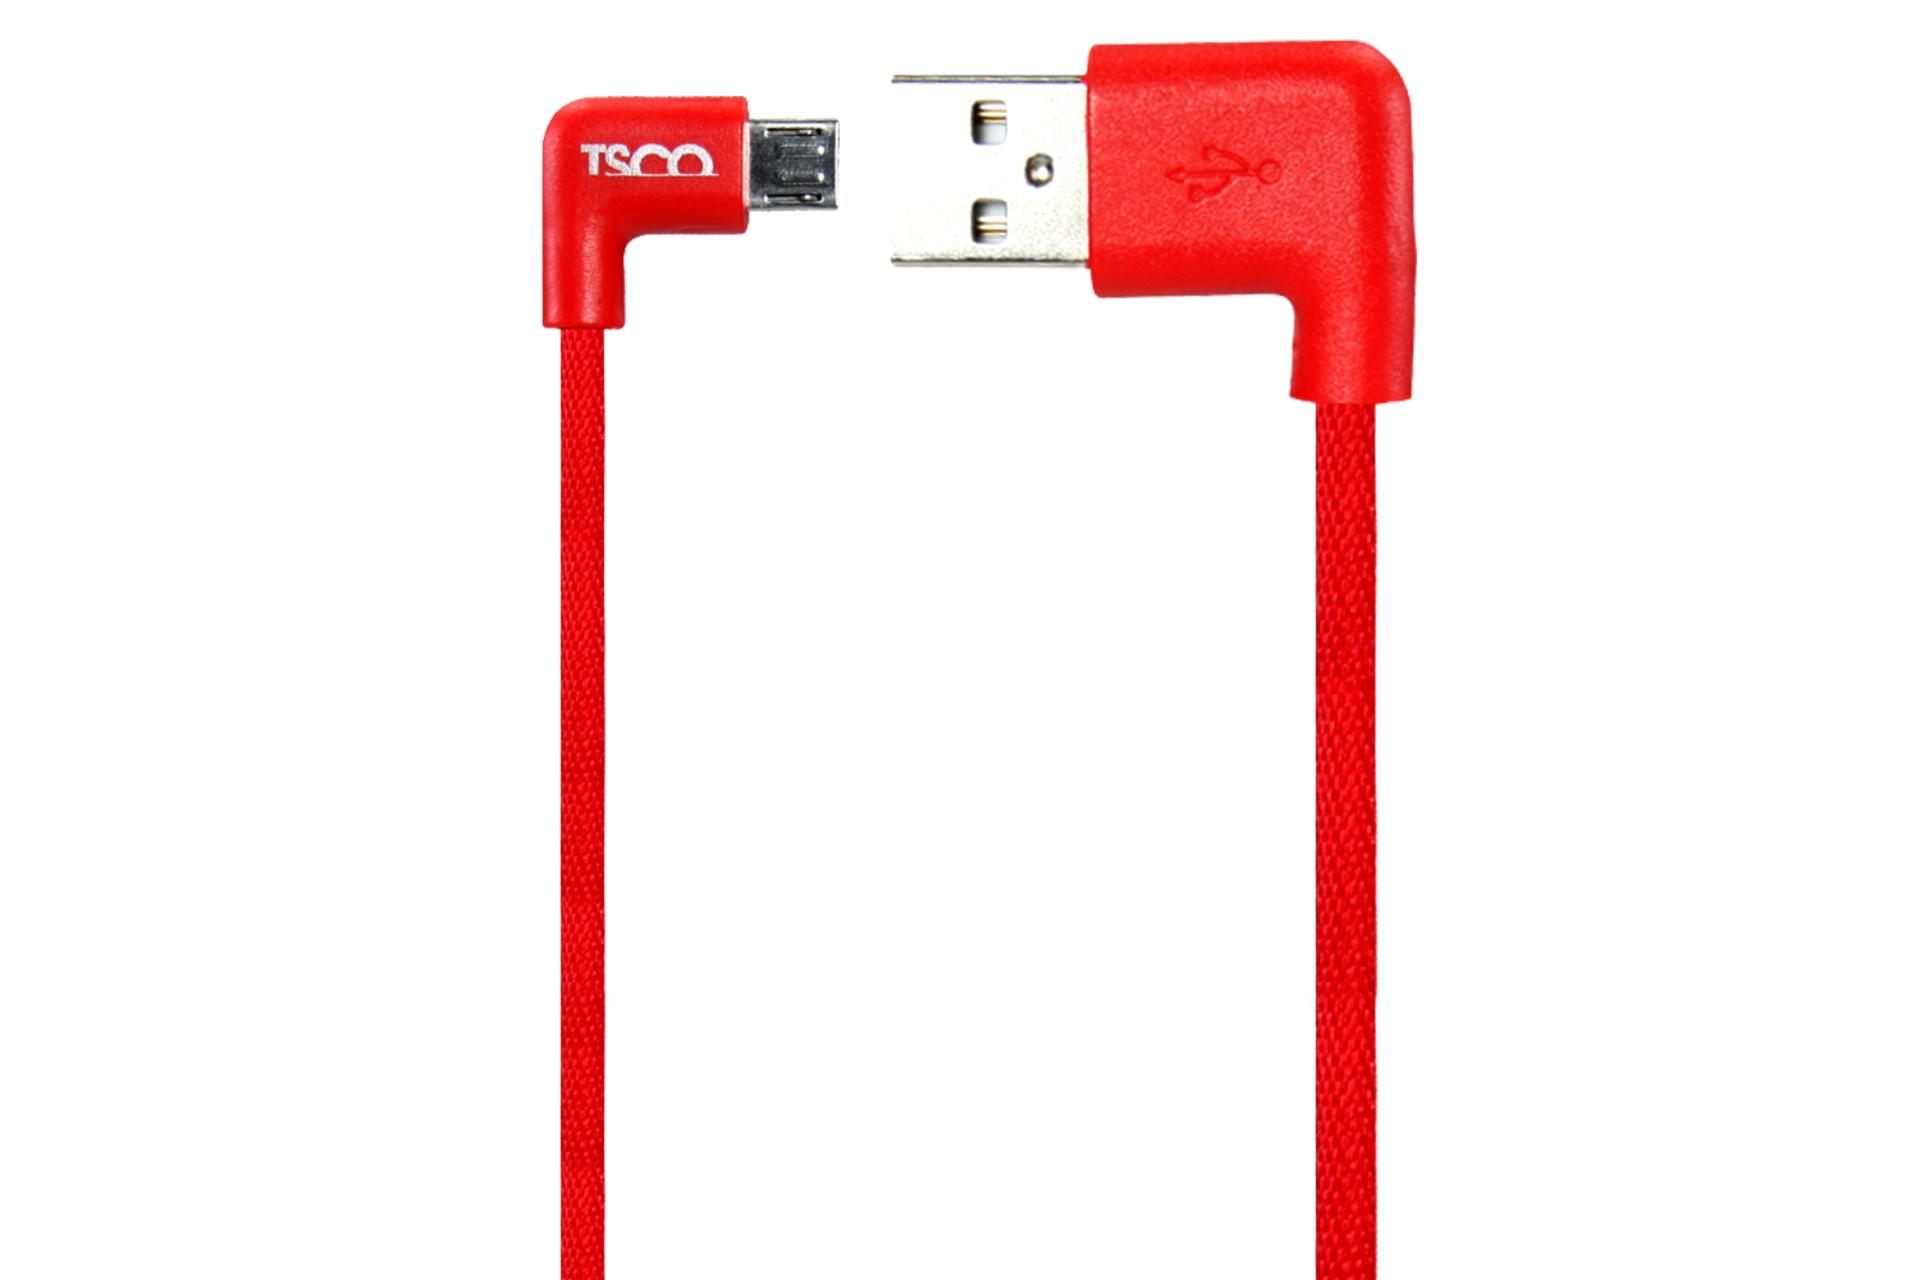 کابل شارژ USB تسکو USB به Micro-USB مدل TC 59N با طول 0.2 متر قرمز